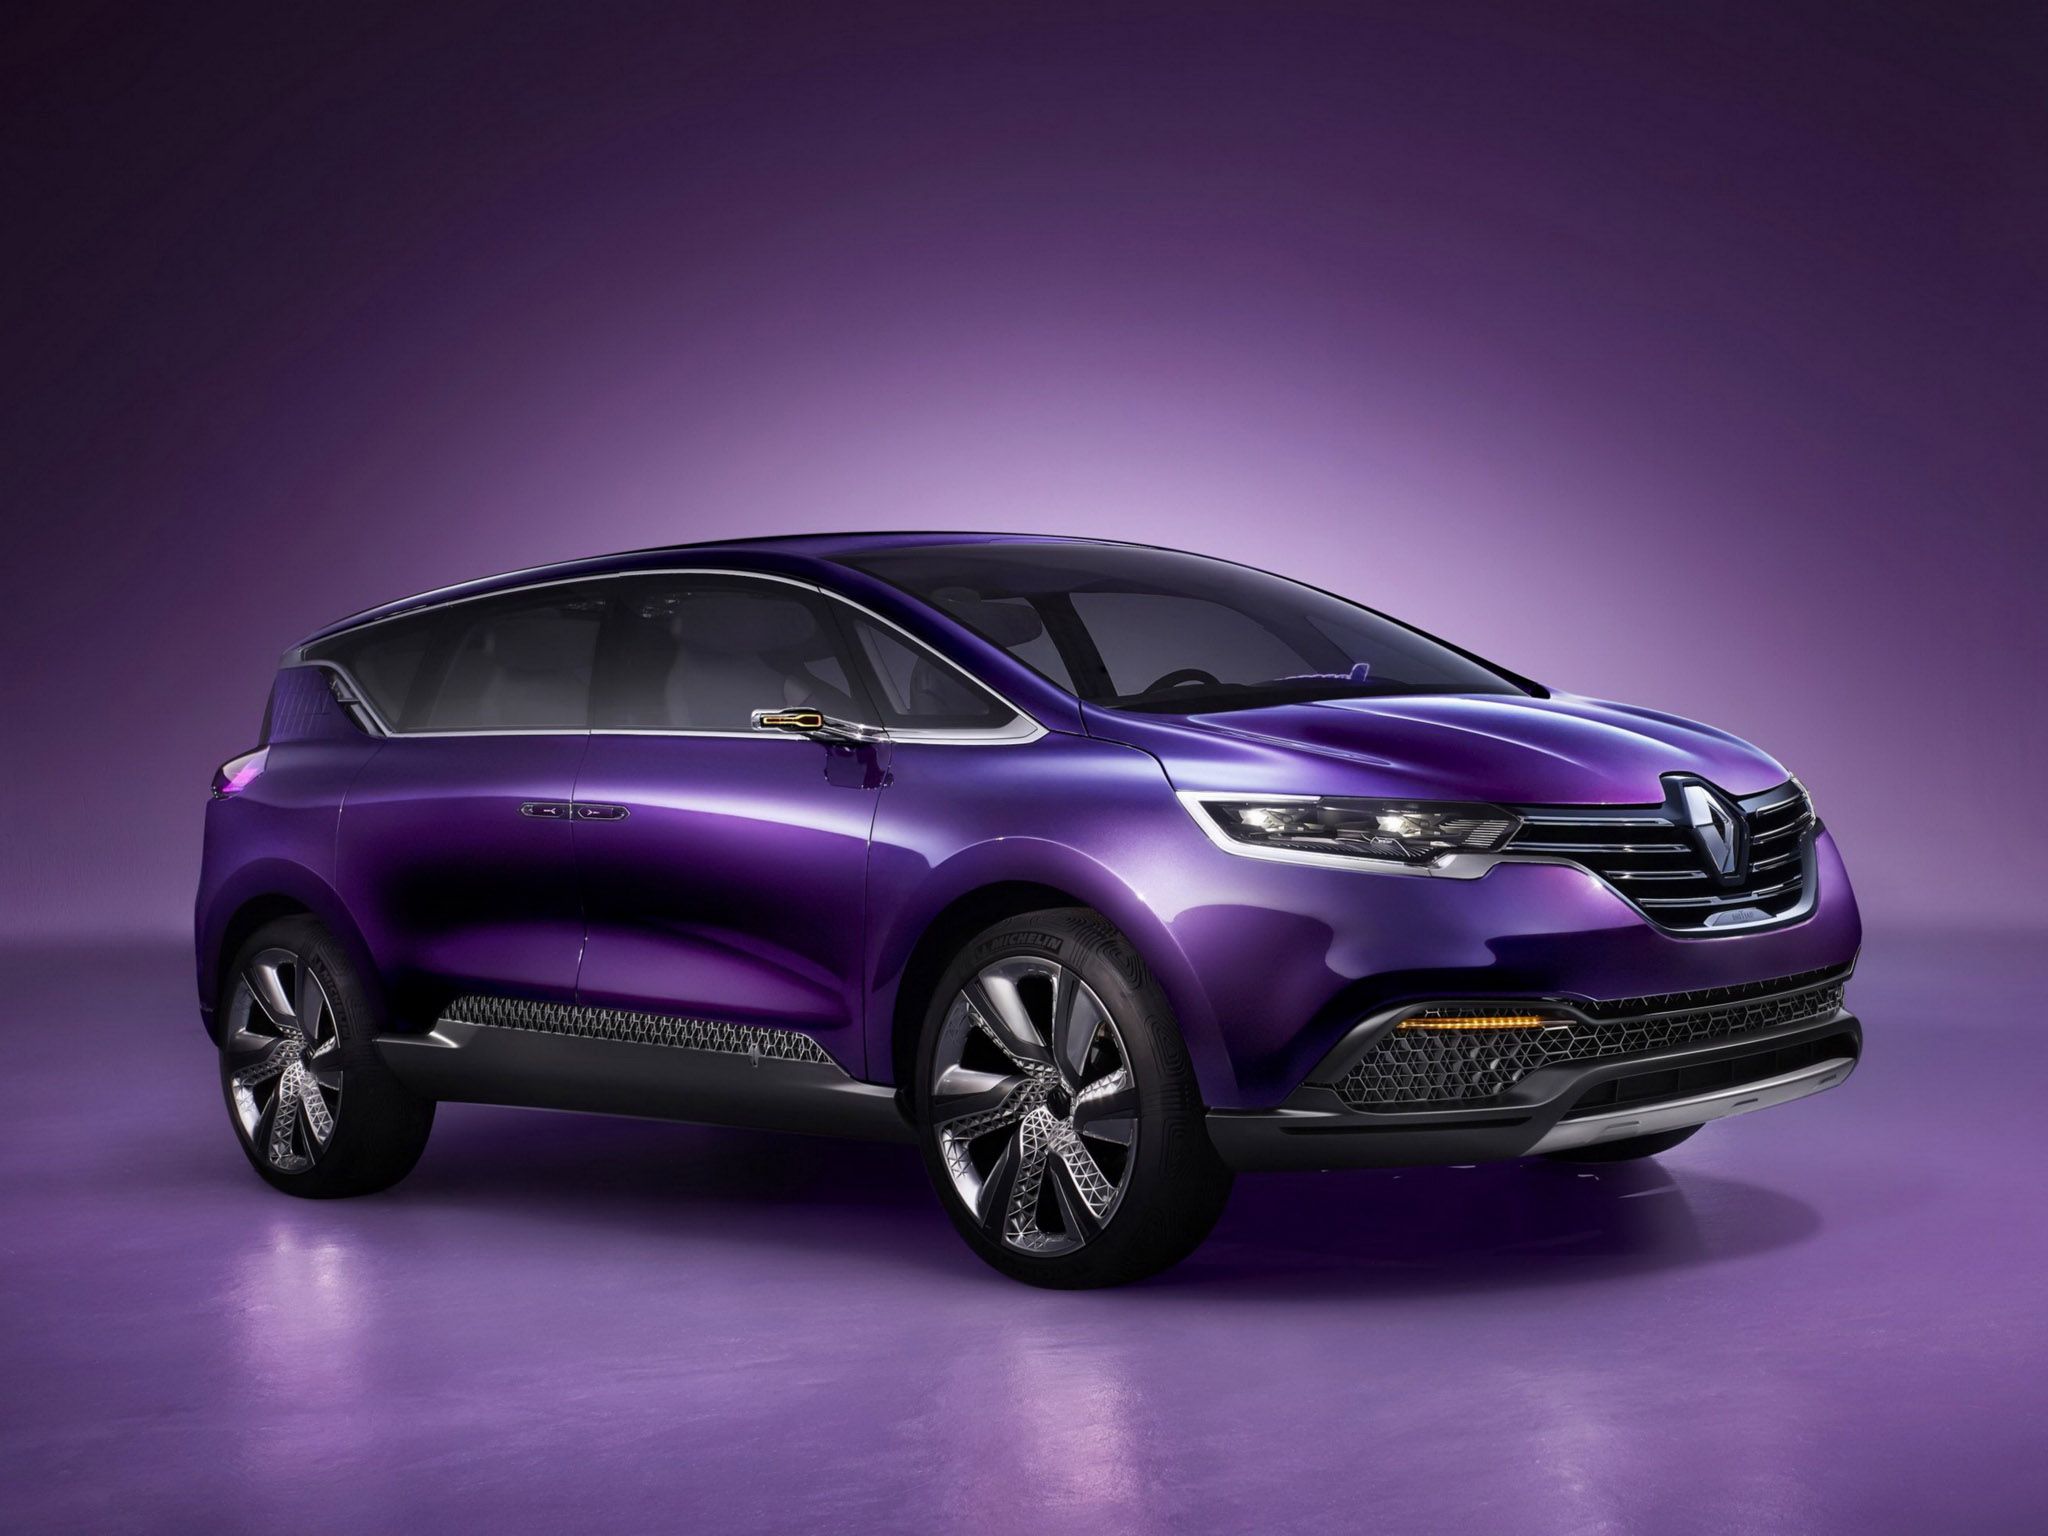 Renault Initiale Paris Concept